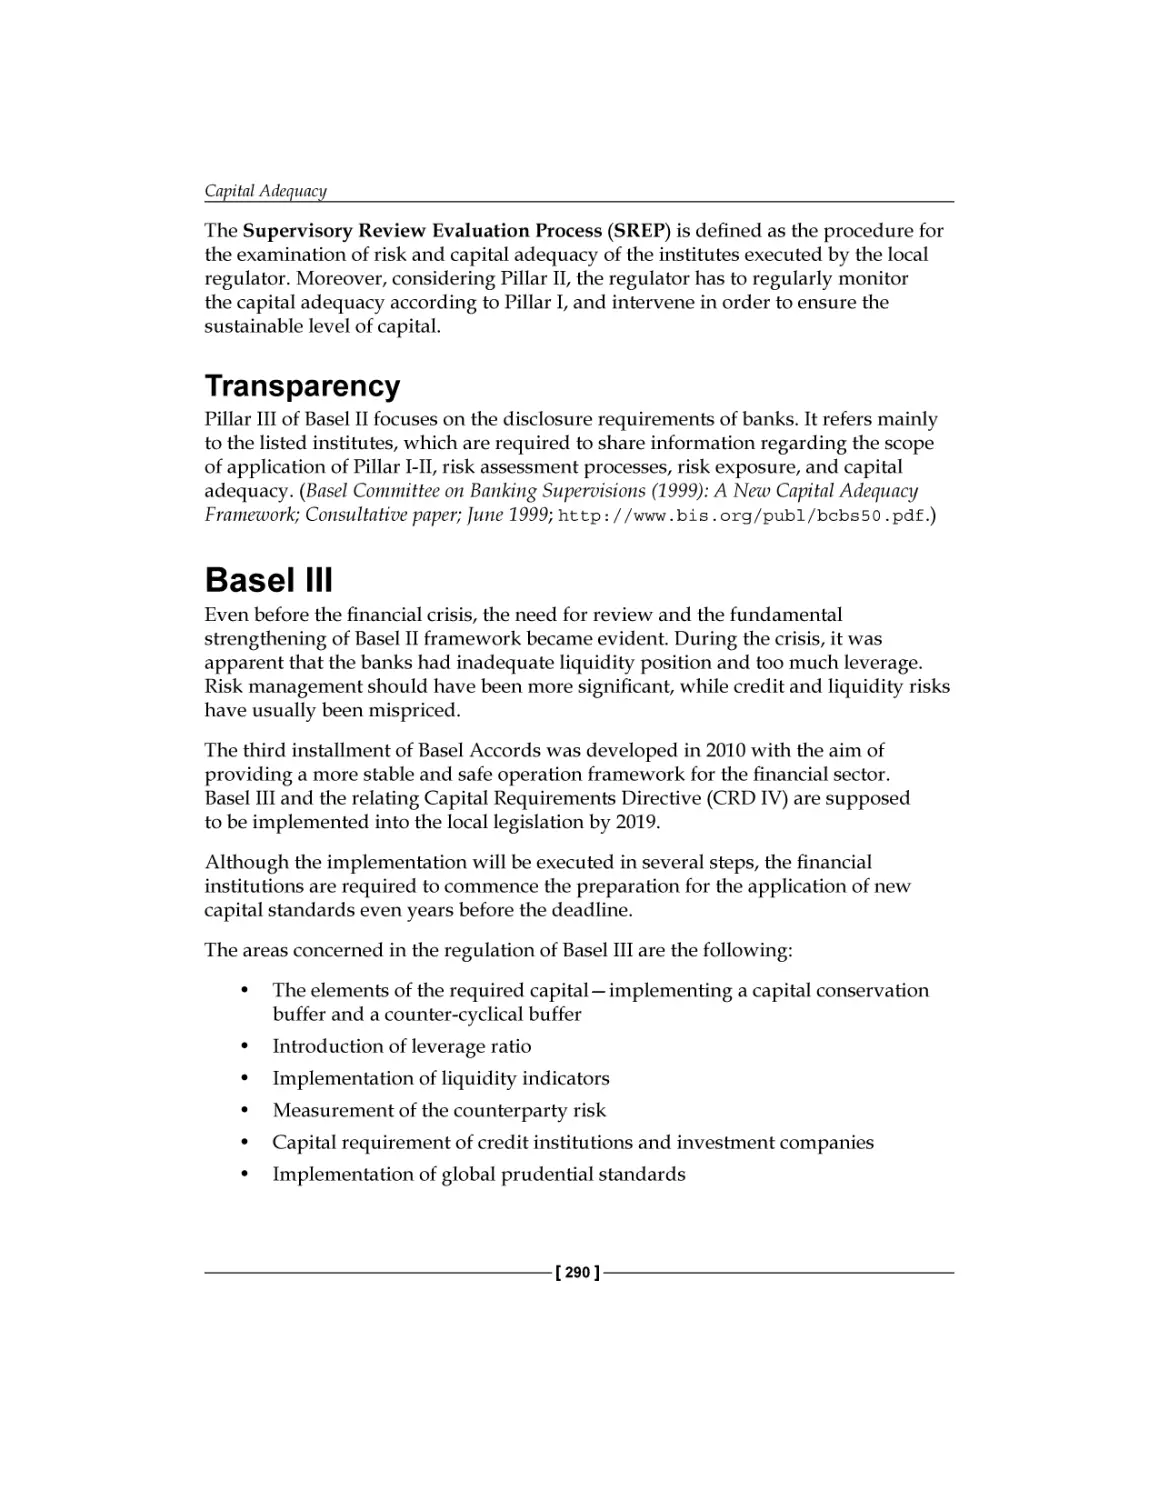 Transparency
Basel III